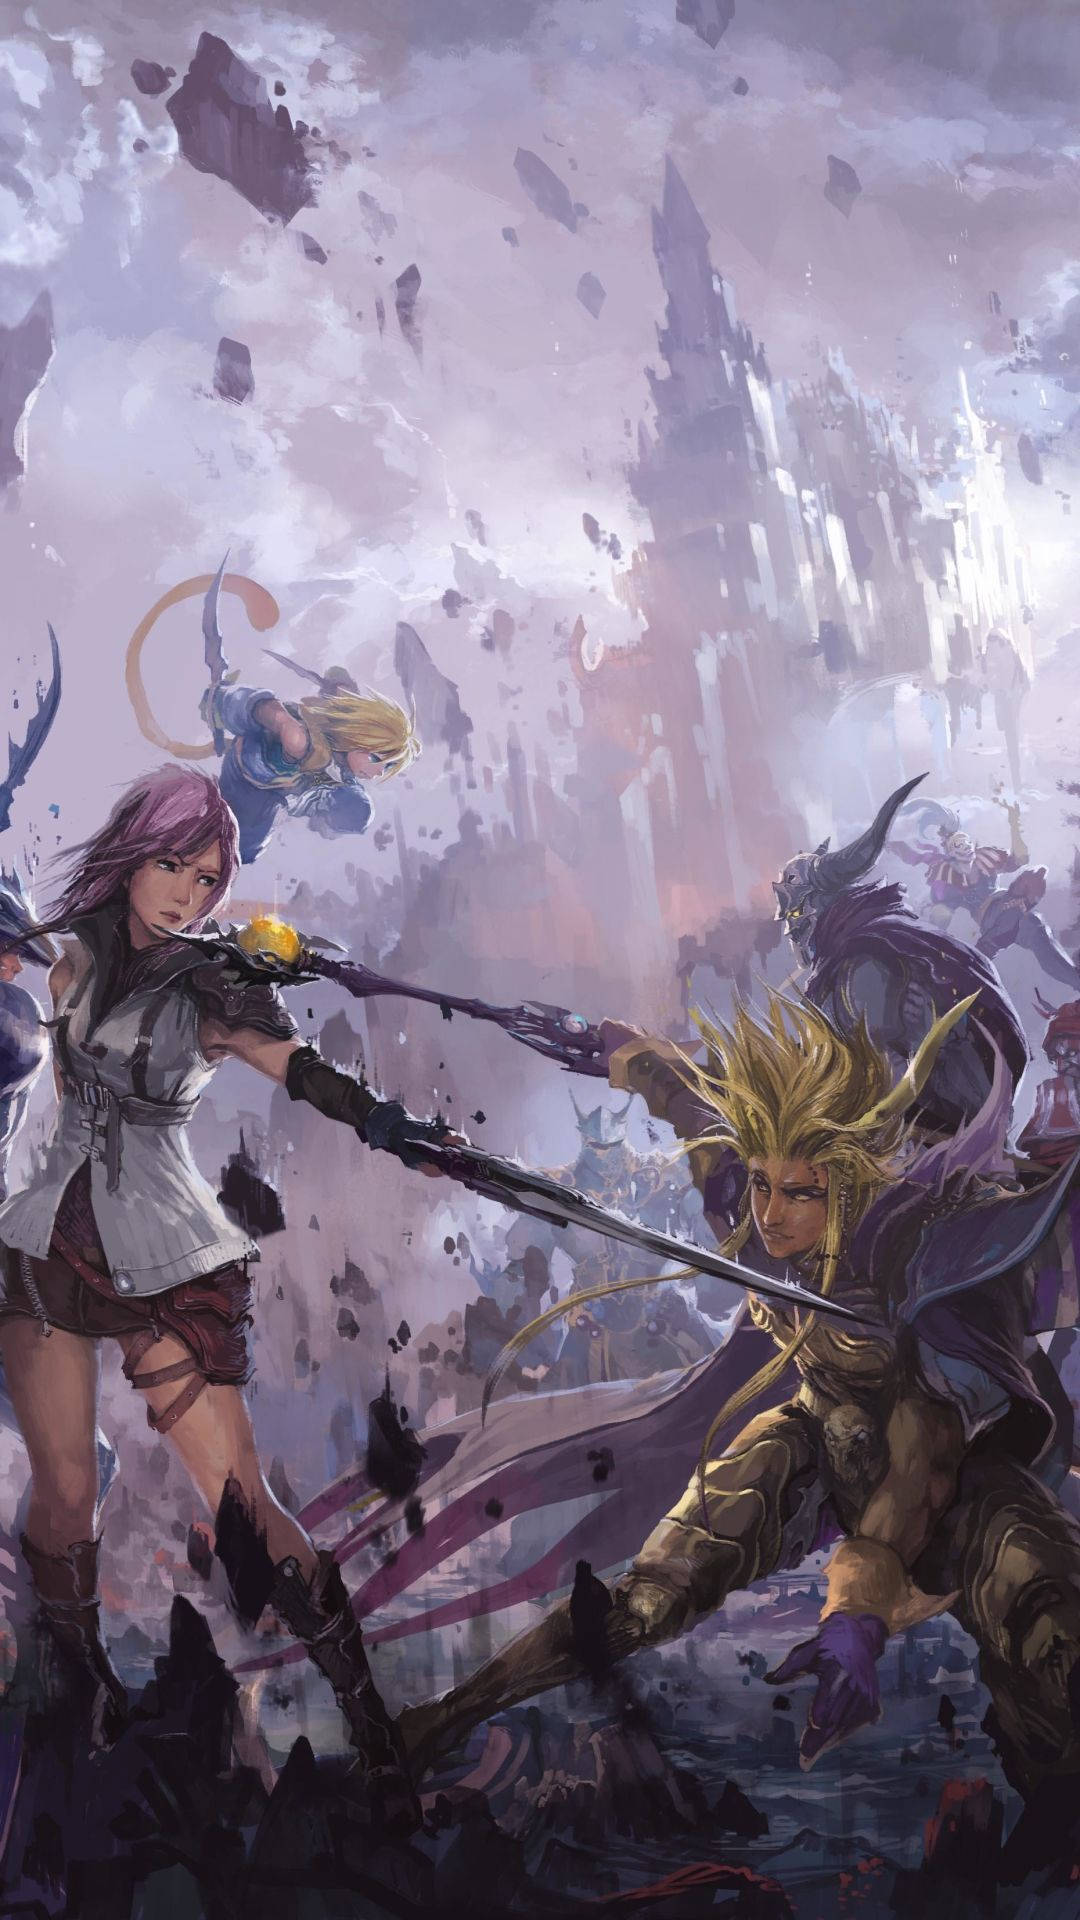 Uppleväventyrets Spänning Med Final Fantasy På Din Iphone. Wallpaper